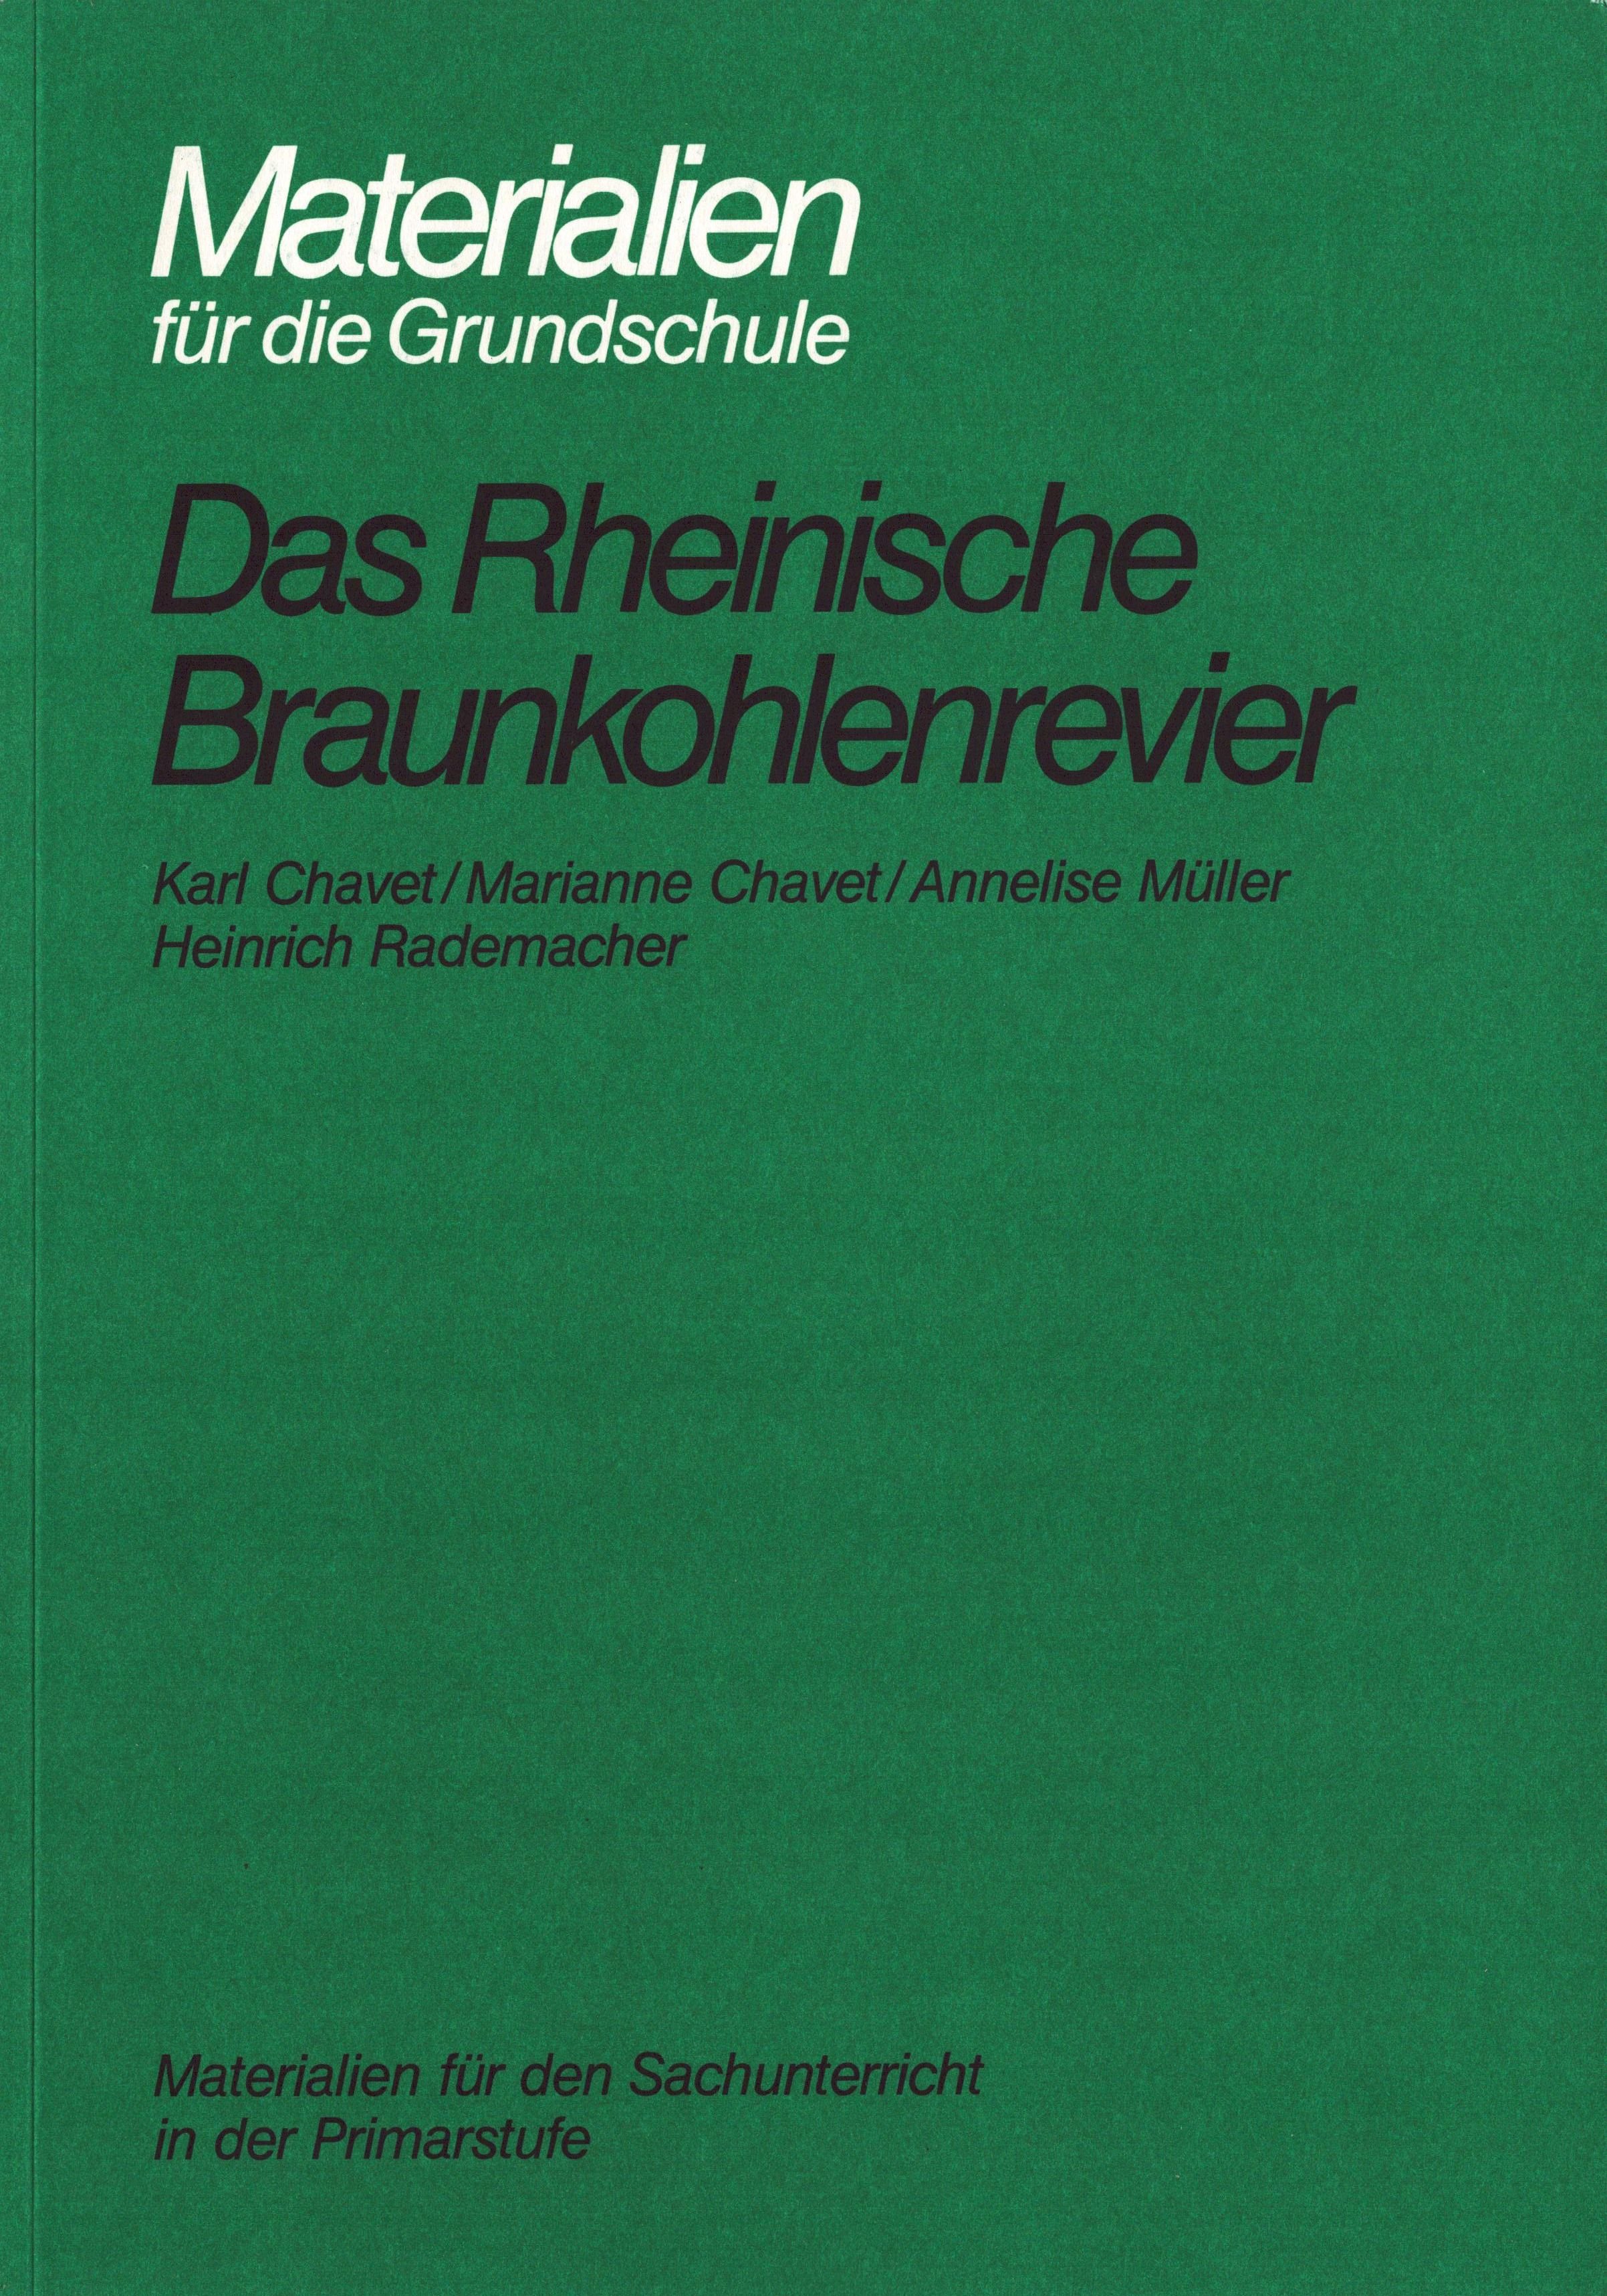 Materialien für die Grundschule. Das Rheinische Braunkohlenrevier (Archiv SAXONIA-FREIBERG-STIFTUNG CC BY-NC-SA)